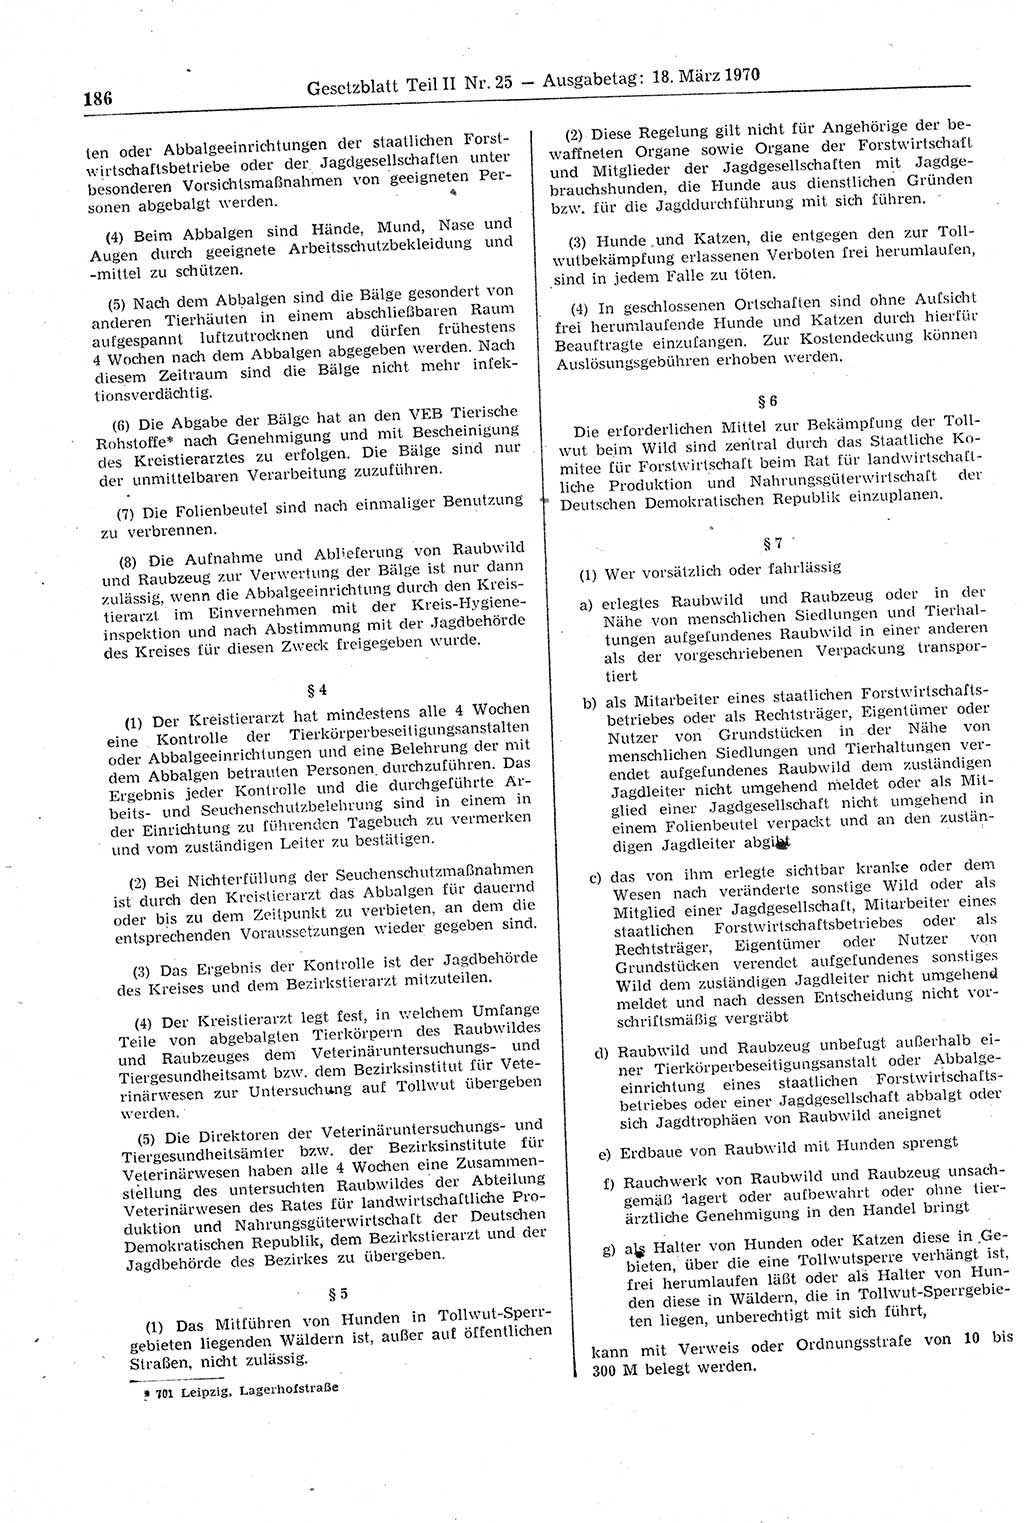 Gesetzblatt (GBl.) der Deutschen Demokratischen Republik (DDR) Teil ⅠⅠ 1970, Seite 186 (GBl. DDR ⅠⅠ 1970, S. 186)